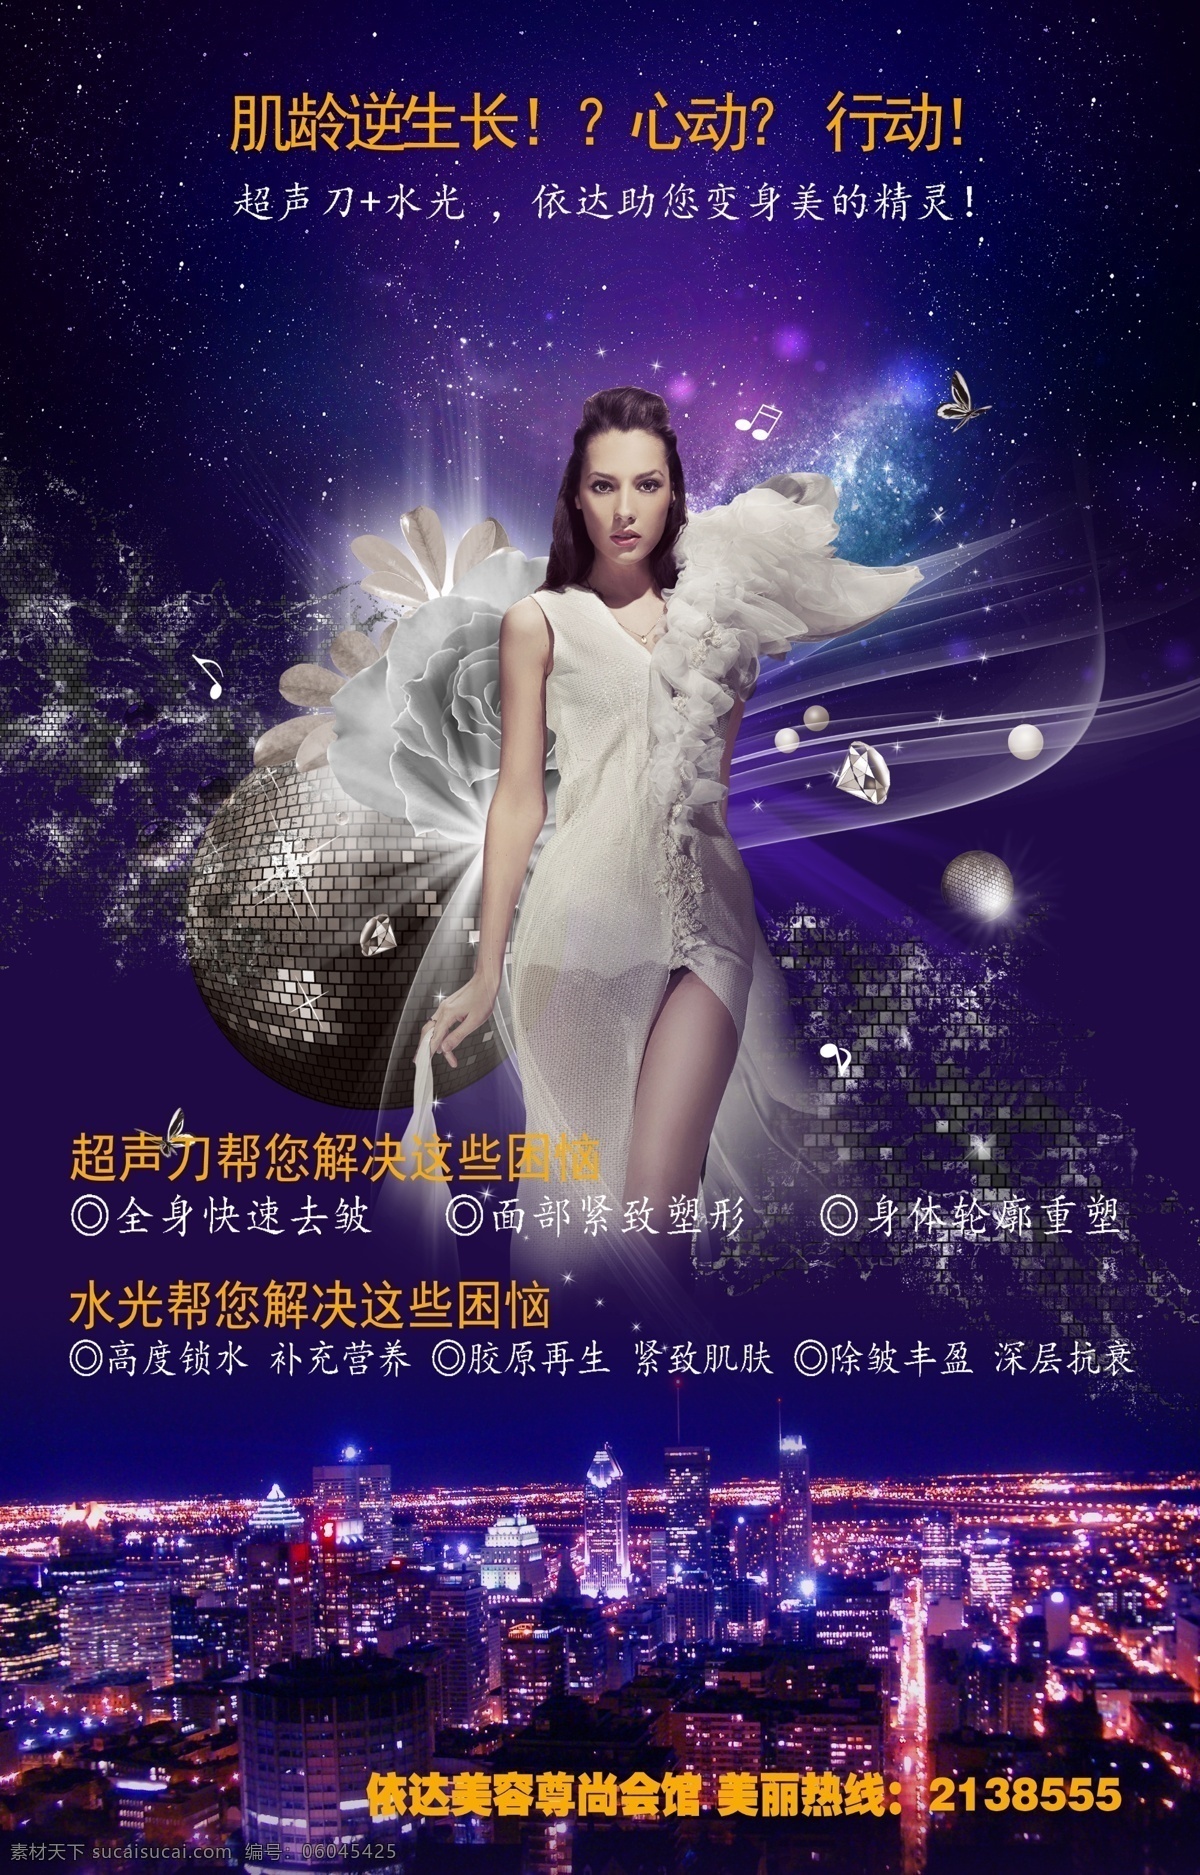 超声 刀 水光 项目 宣传海报 华丽 美女 夜景 超声刀 项目宣传 海报